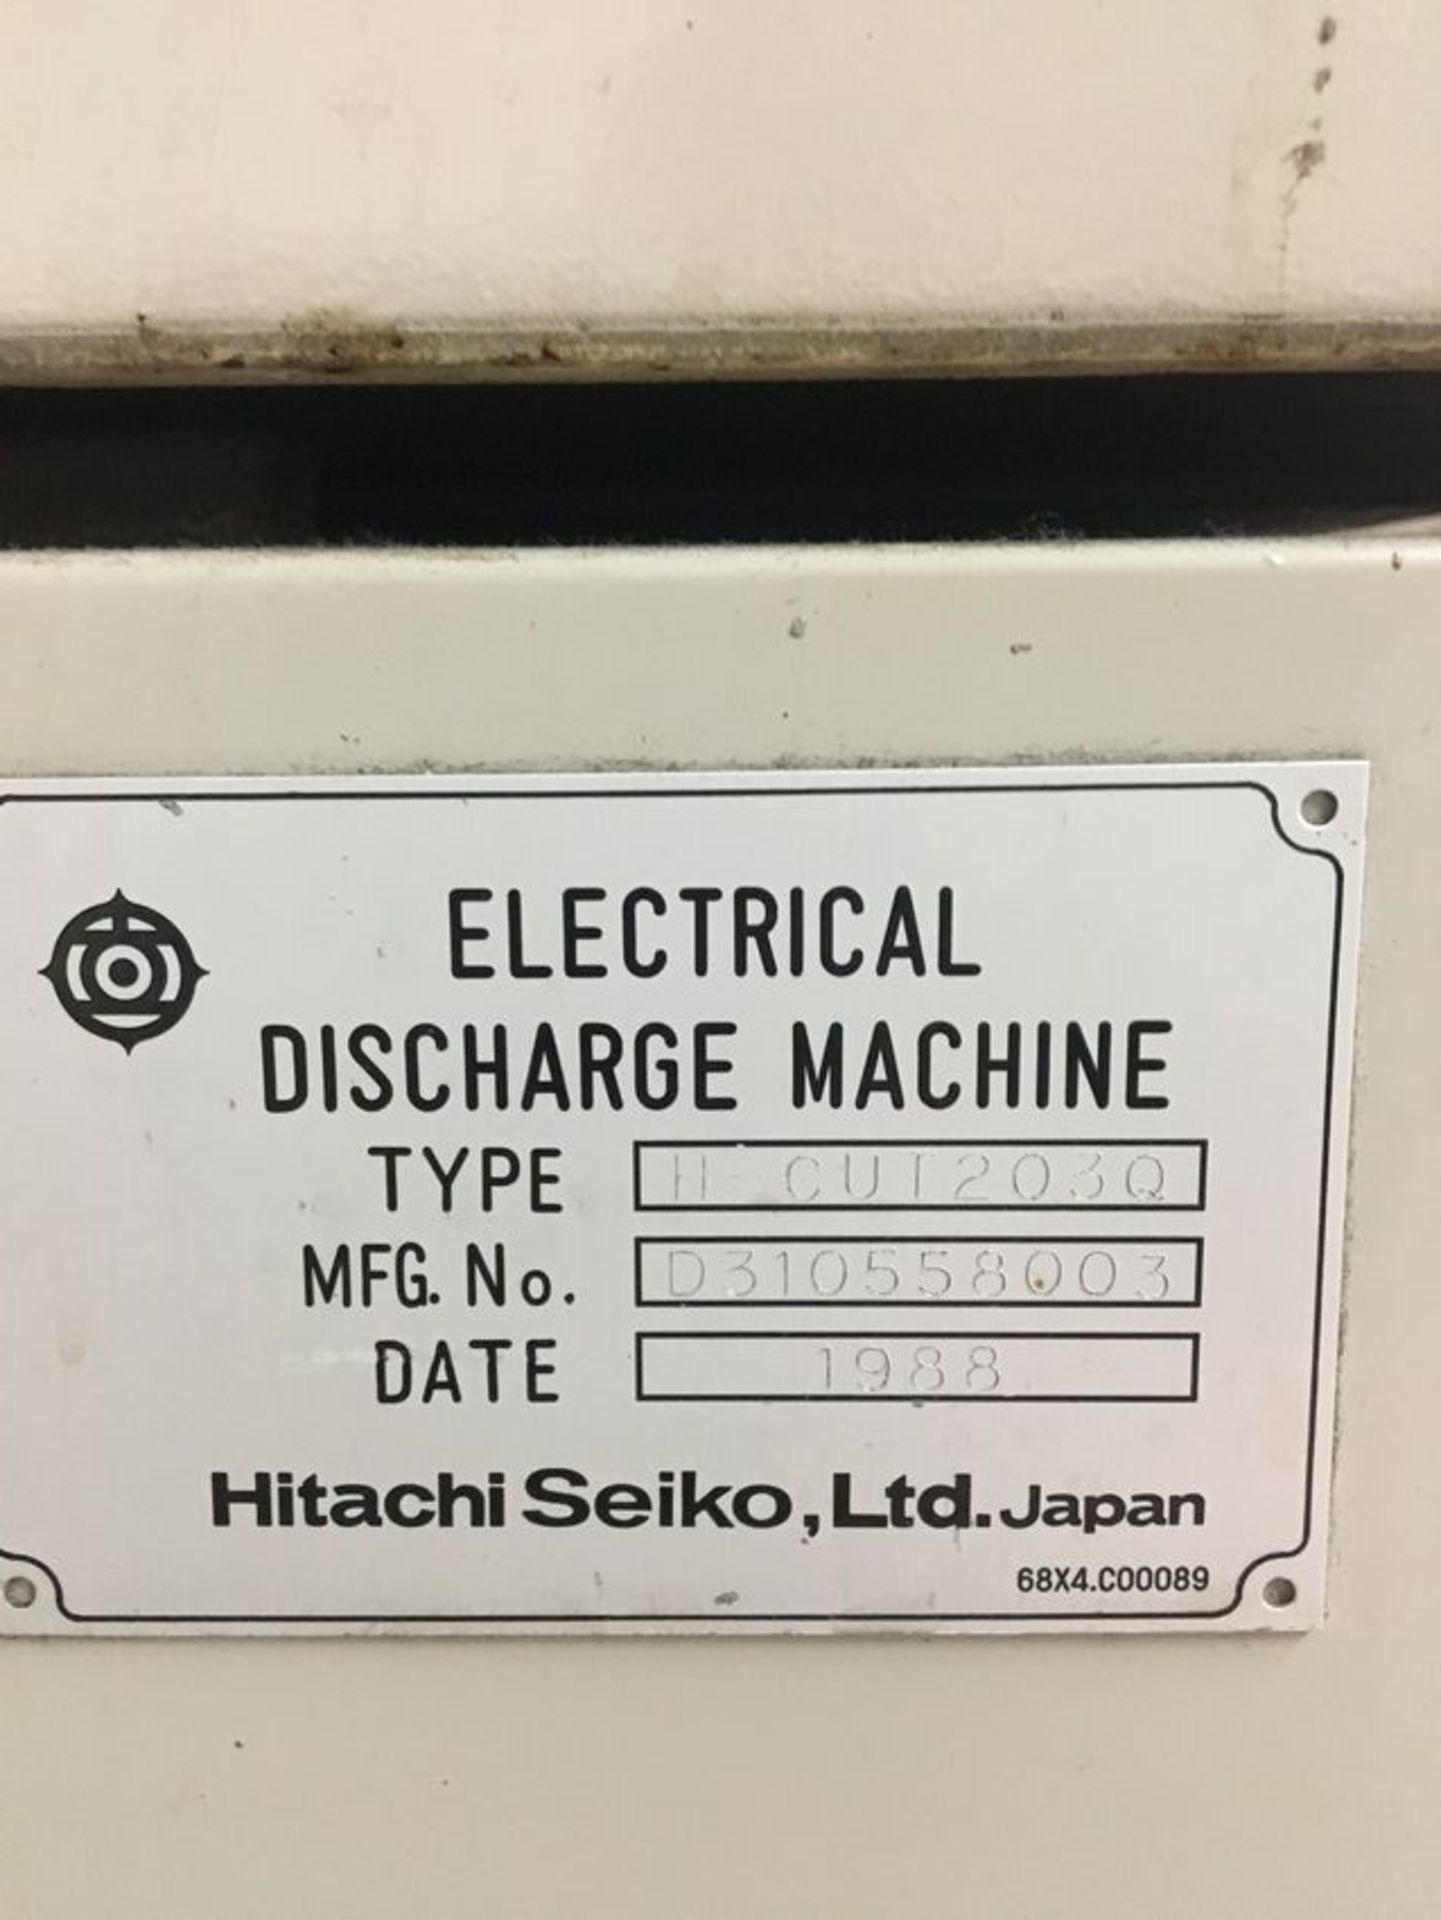 1988 Hitachi Seiki H cut 203q edm cnc machine- fanuc sp 250 controls, s/n-D310558003 - Image 5 of 5